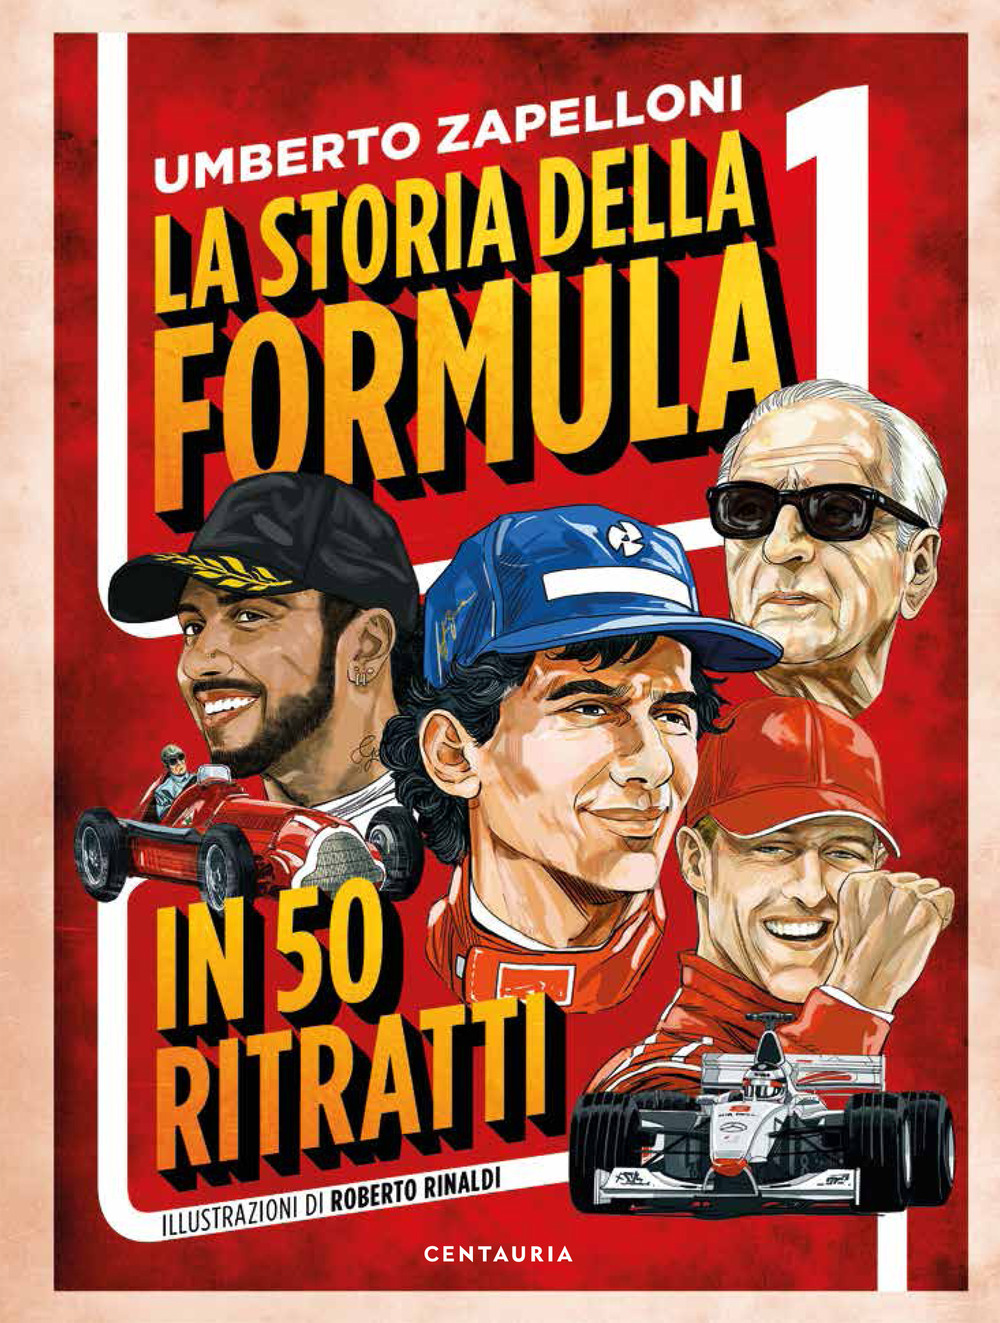 La storia della Formula 1 in 50 ritratti